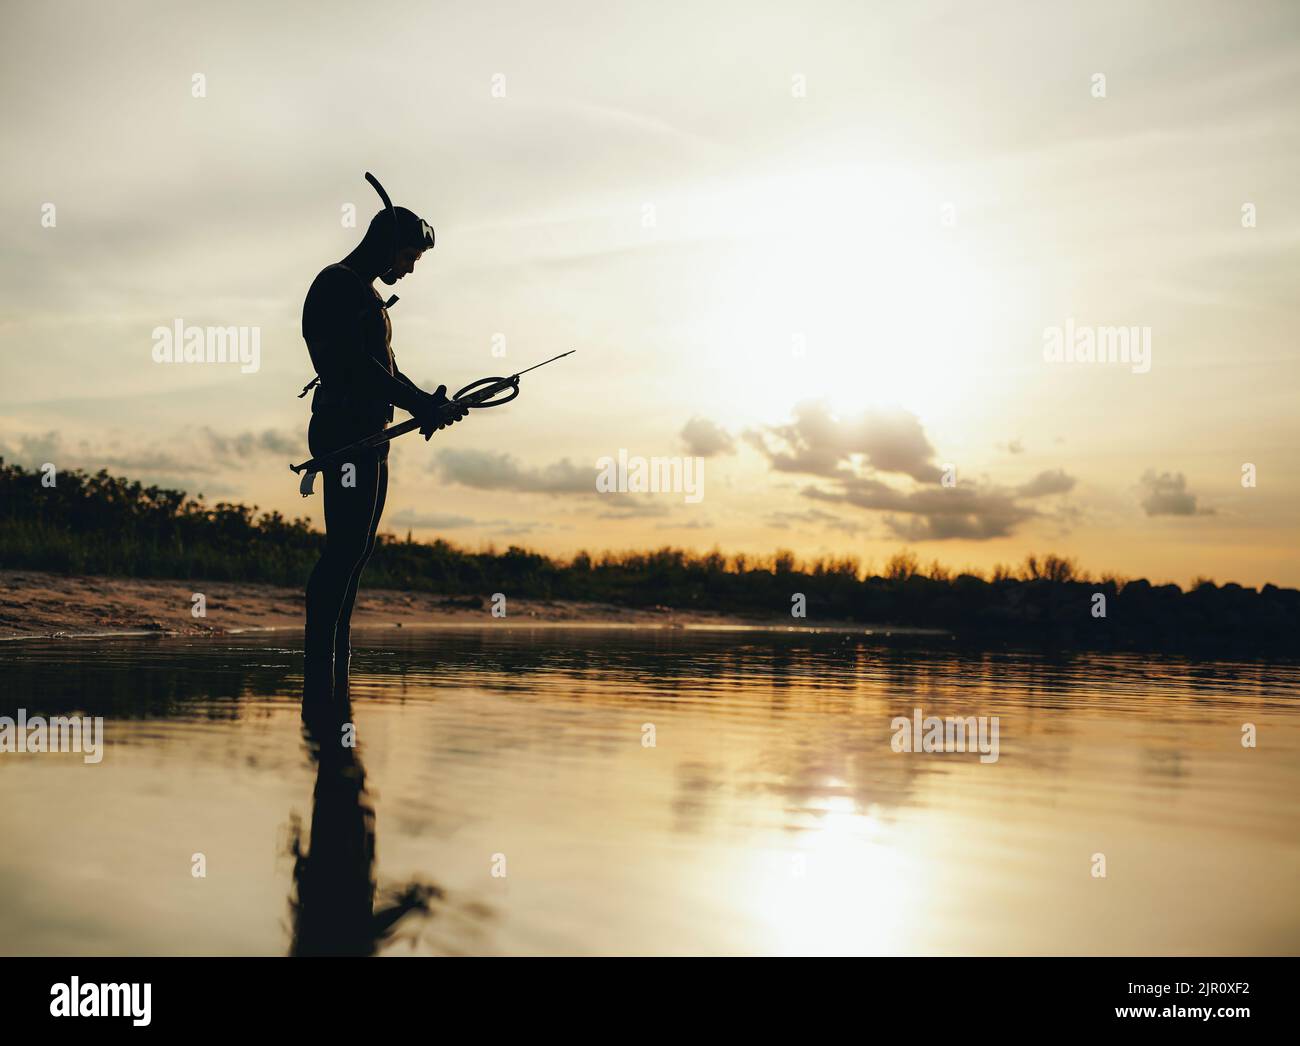 Seitenansicht des Speerfischers, der seine Speerpistole kontrolliert, während er im Meerwasser steht. Abenteuerlicher junger Mann, der bei Sonnenuntergang Speerfischen geht. Stockfoto